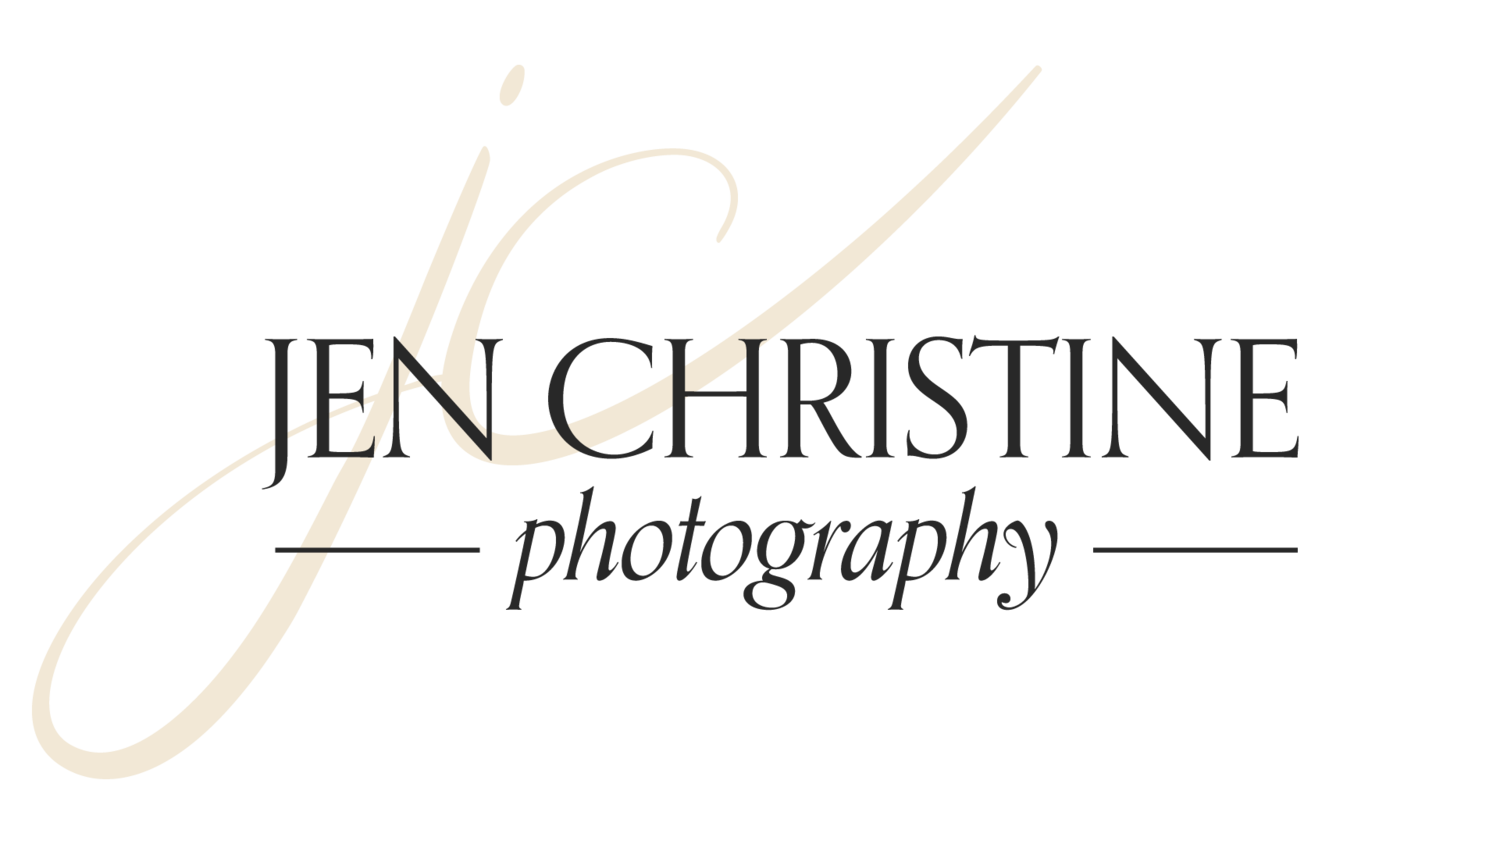 Jen Christine Photography